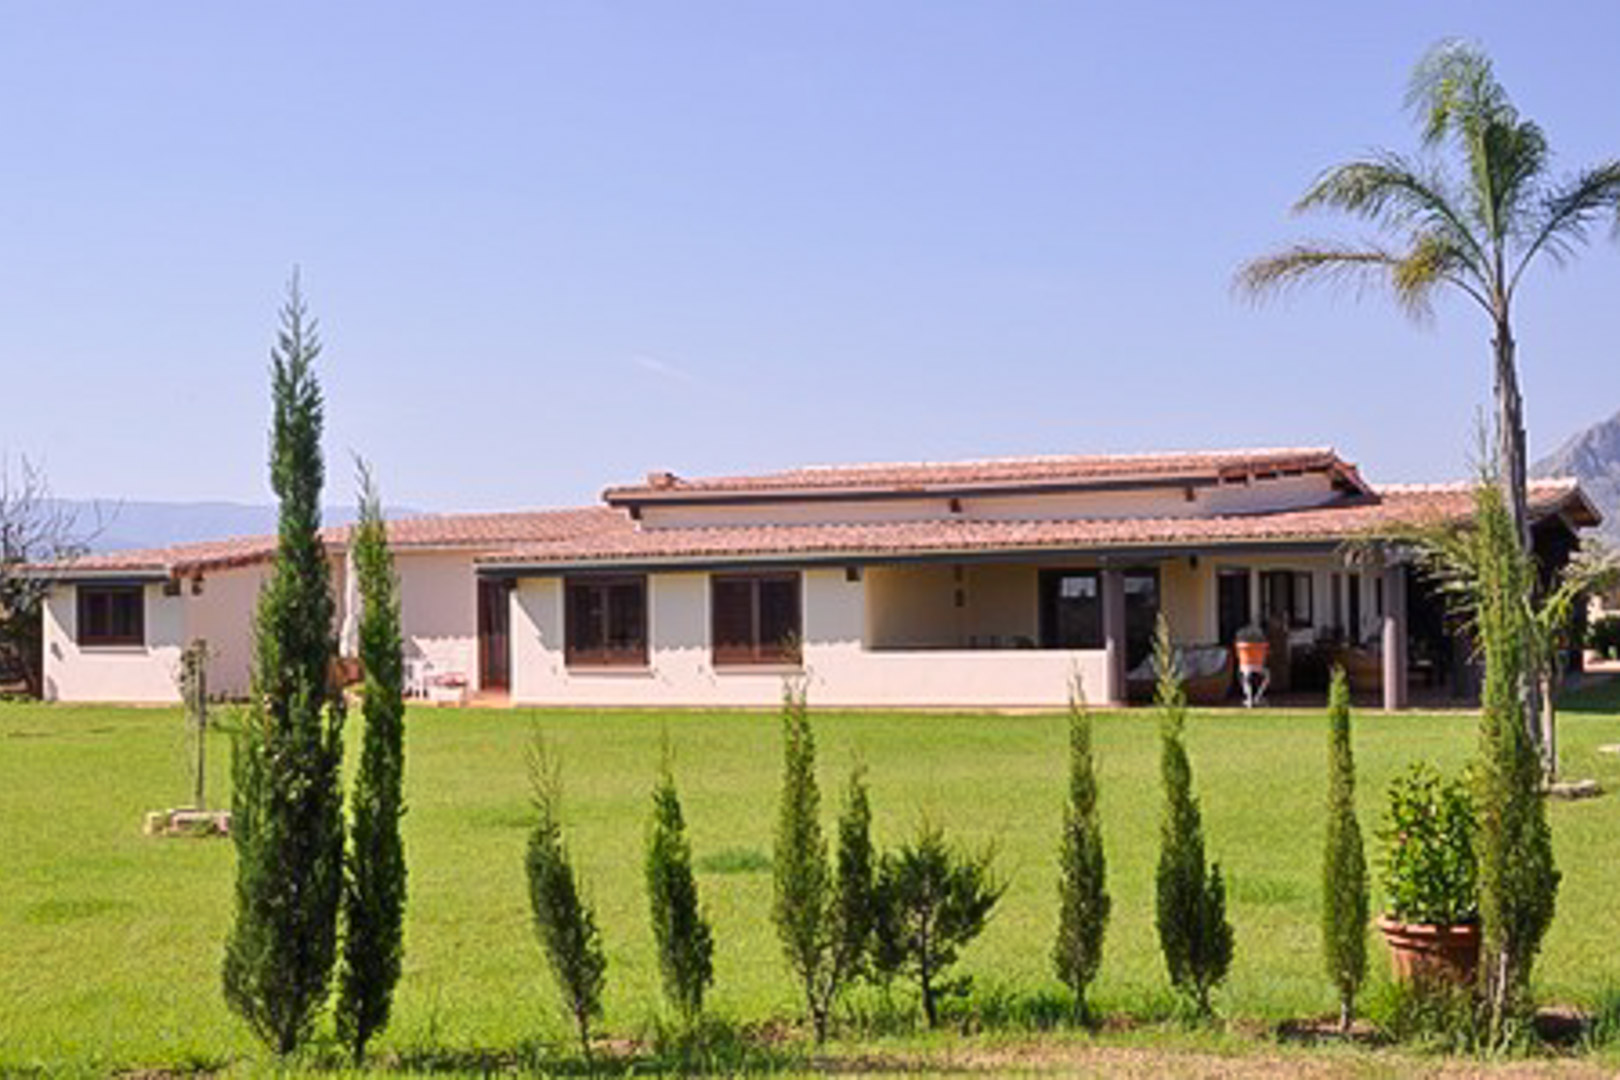 Verkoop. Villa / Chalet in Dénia